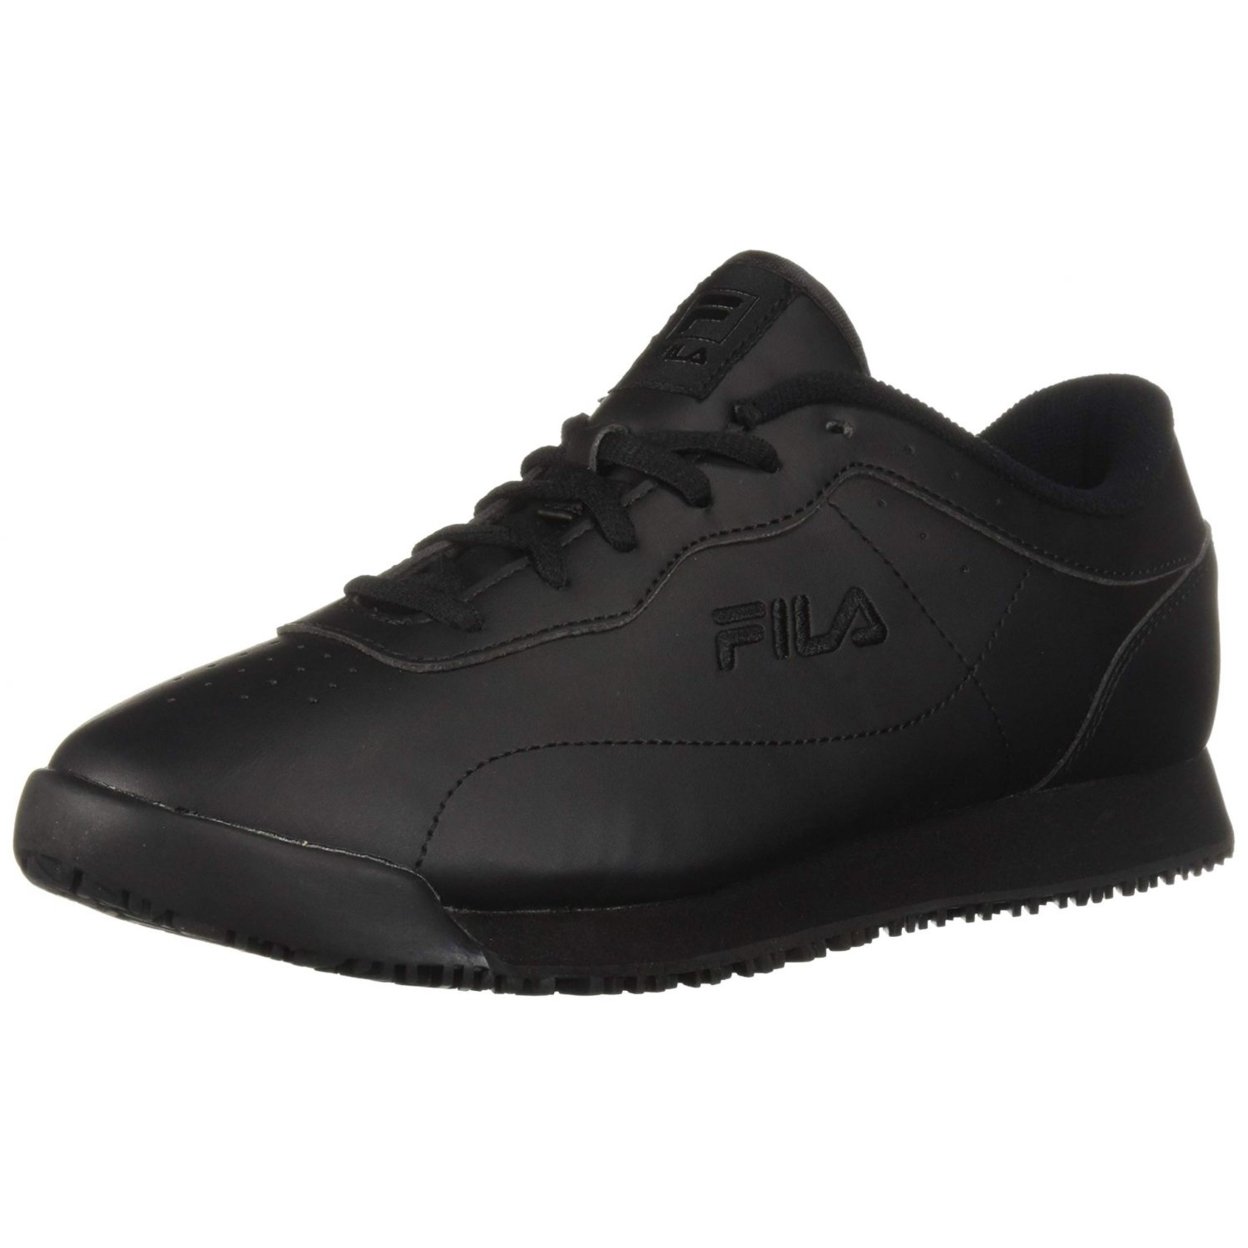 Fila Memory Viable Sr Wide Womens Shoes Size 10, Color: Black 0 BLK/BLK/BLK - Black, 14.0